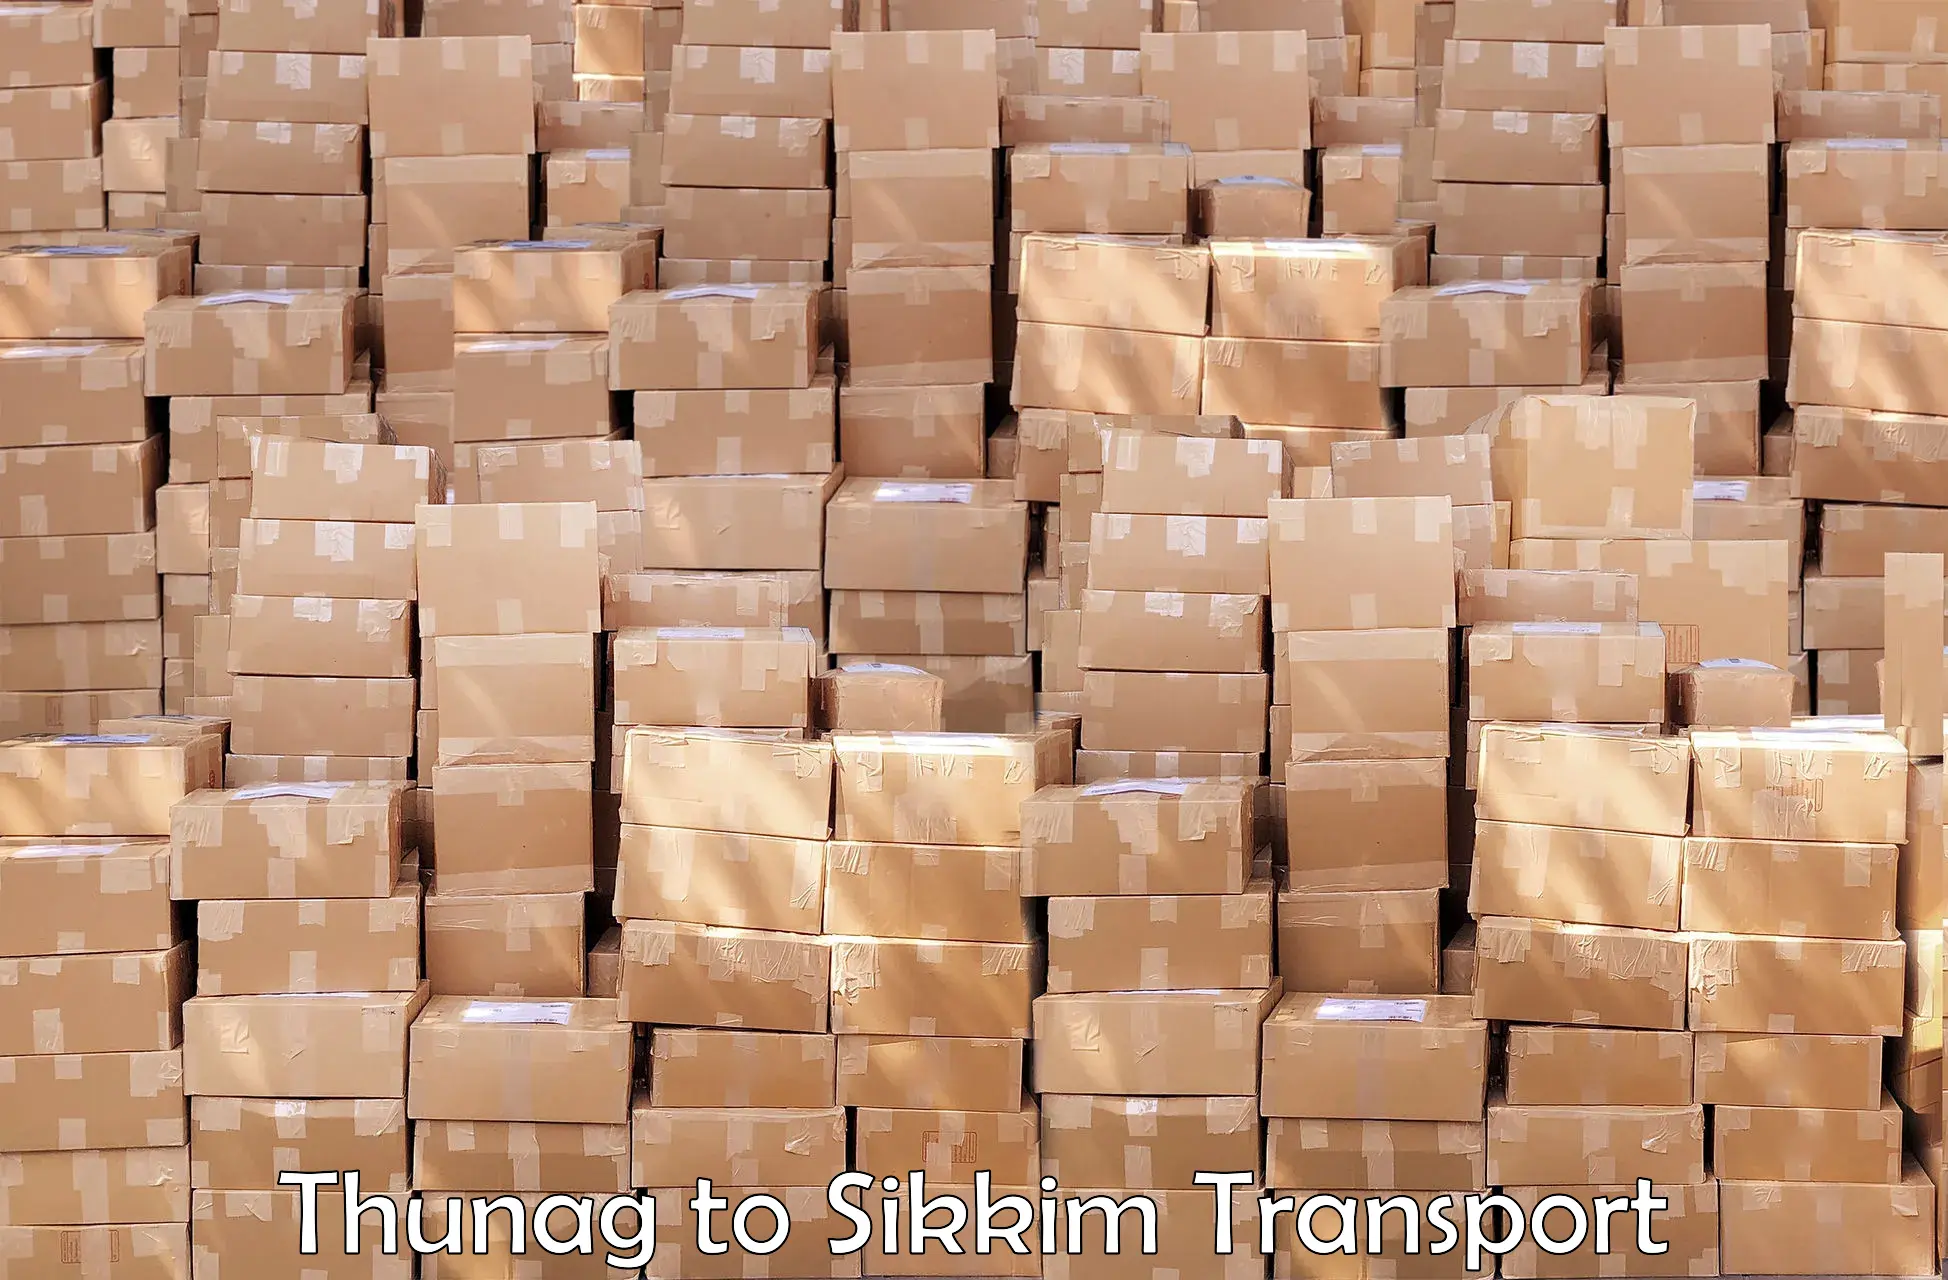 Transport in sharing Thunag to Rangpo